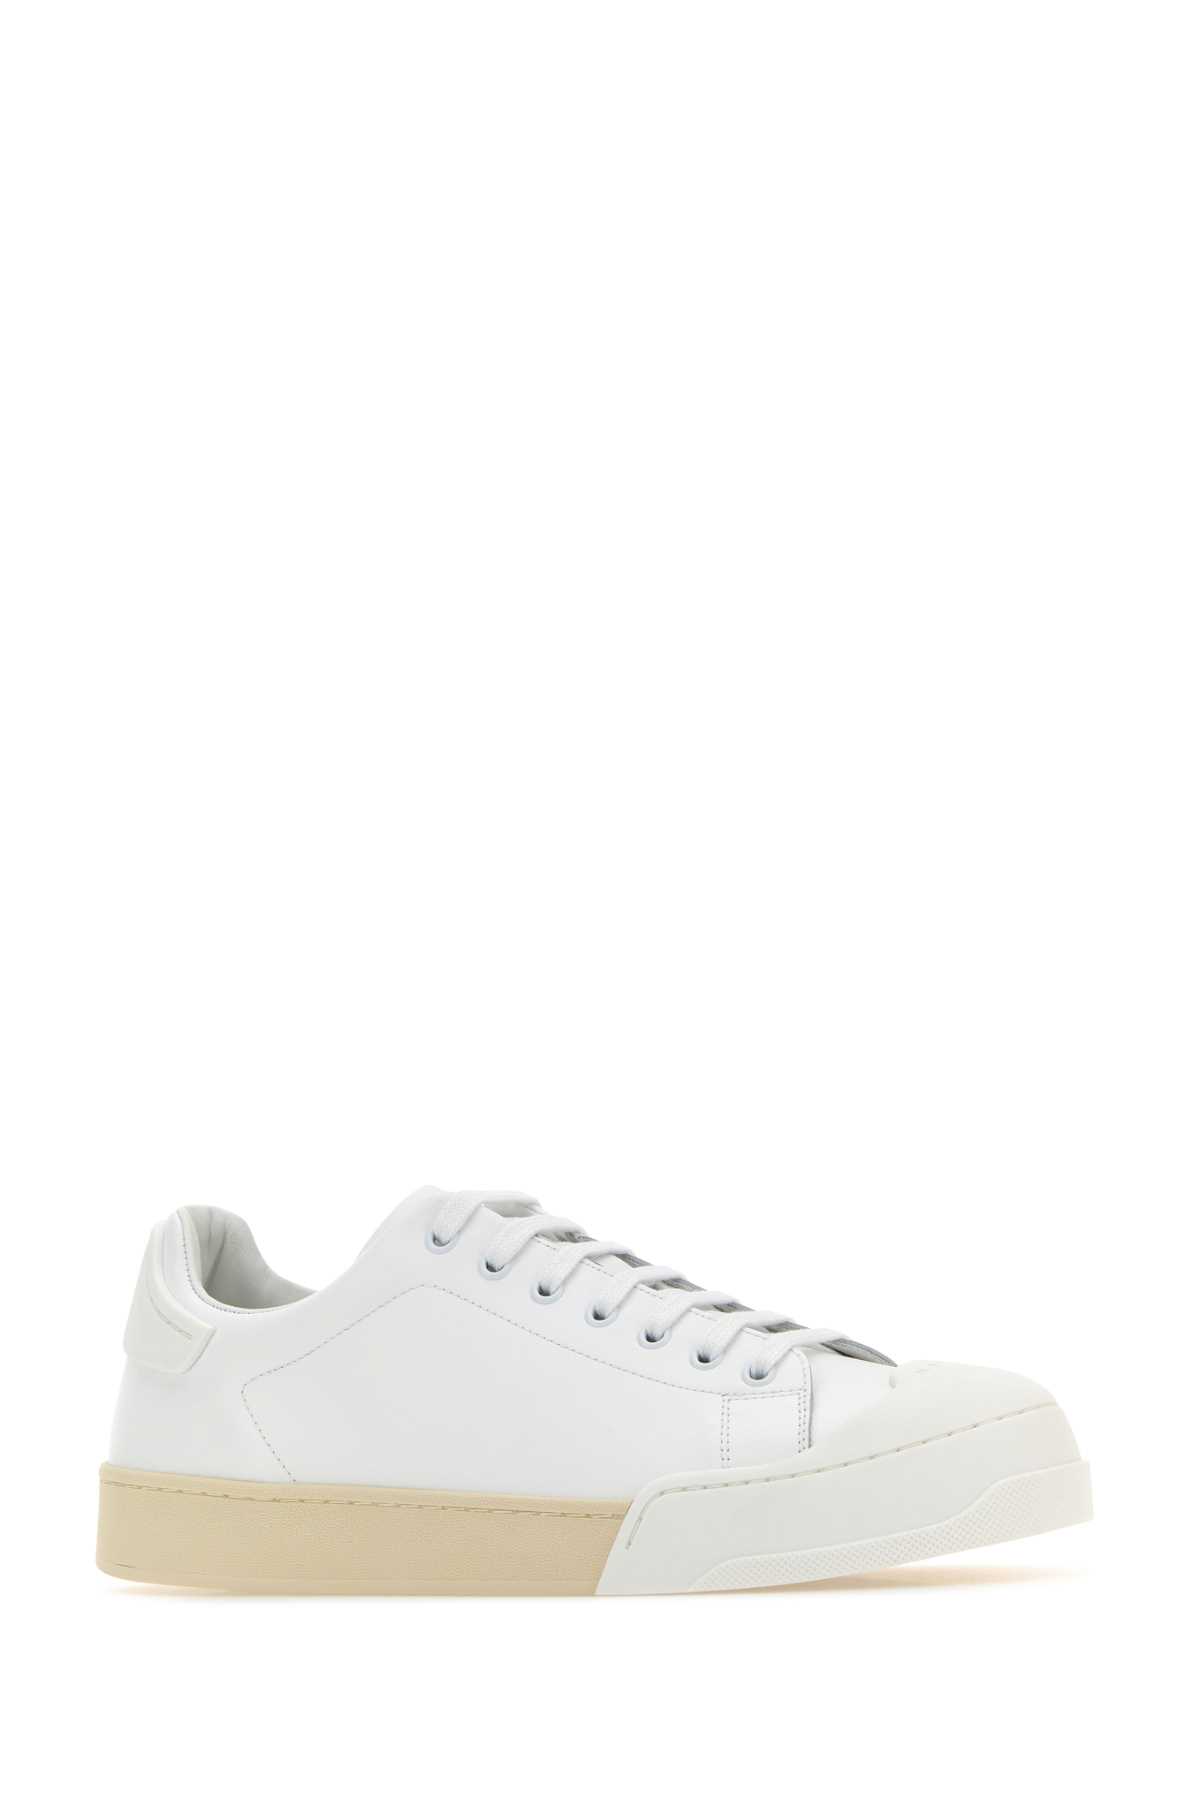 Marni White Leather Dada Sneakers In Lilywhitelilywhite